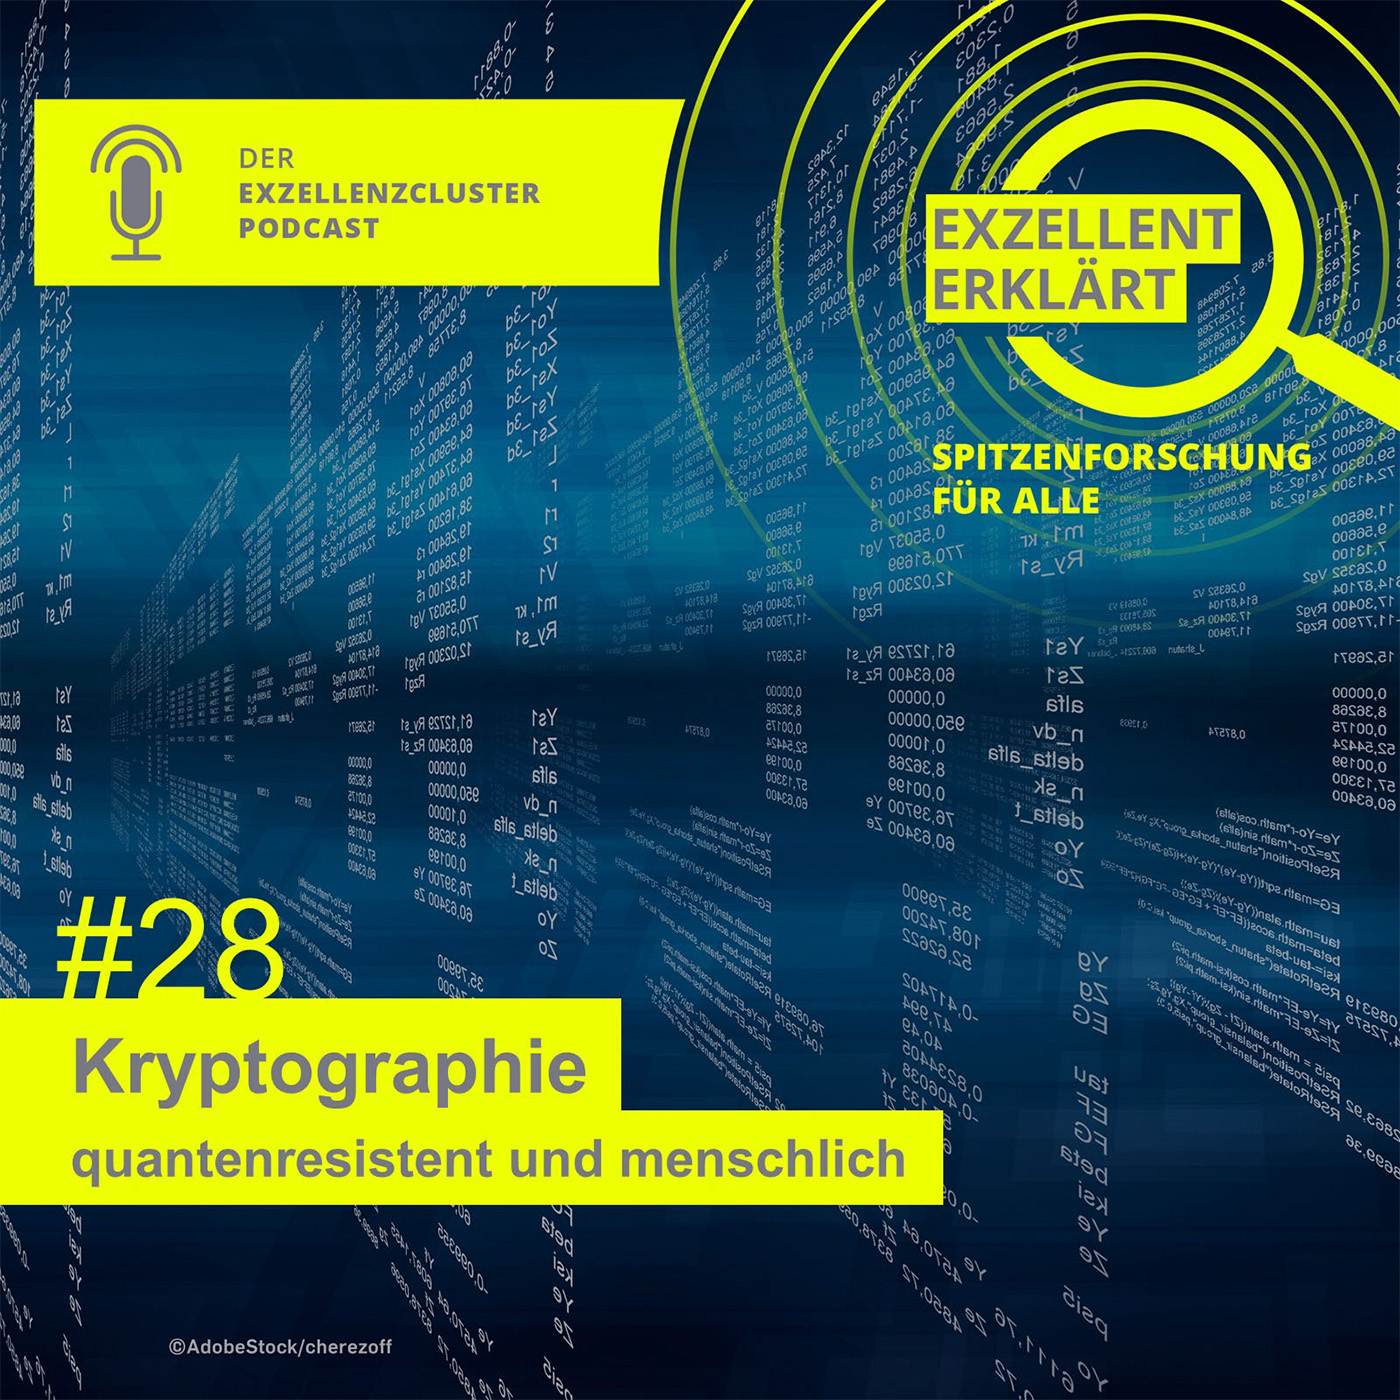 Kryptographie - Quantenresistent und menschlich